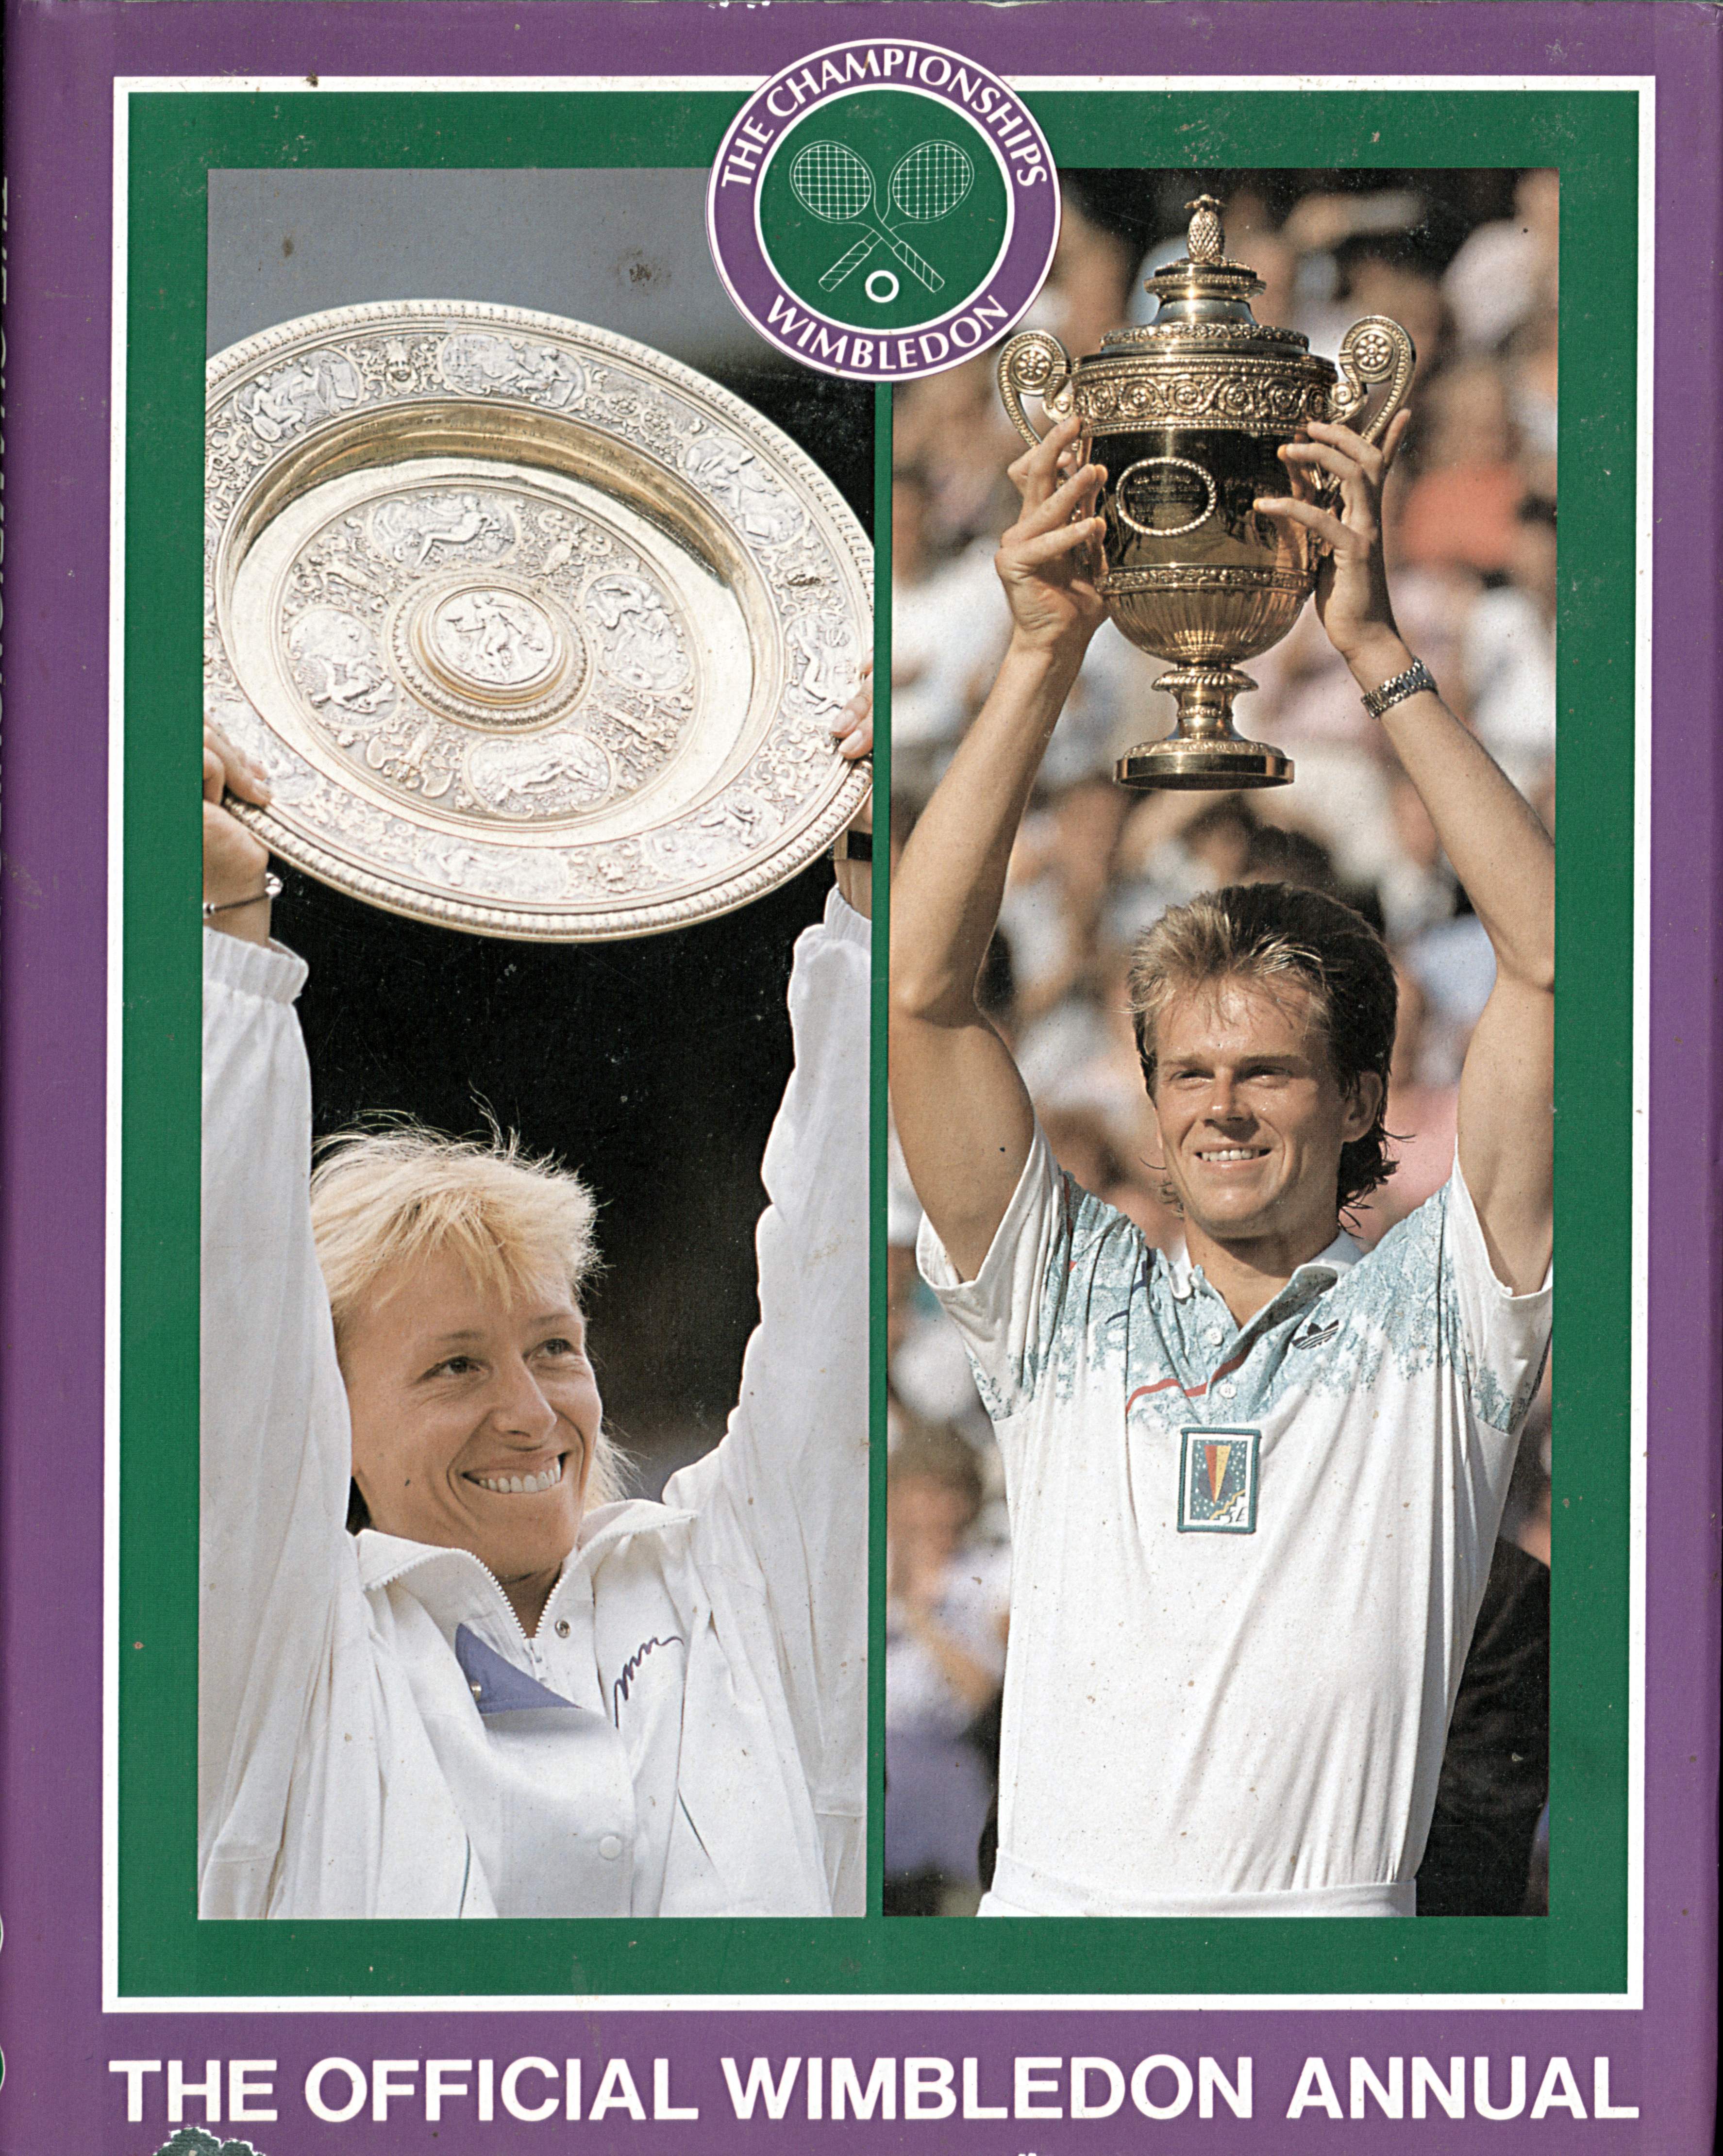 The Championships Wimbledon 1990